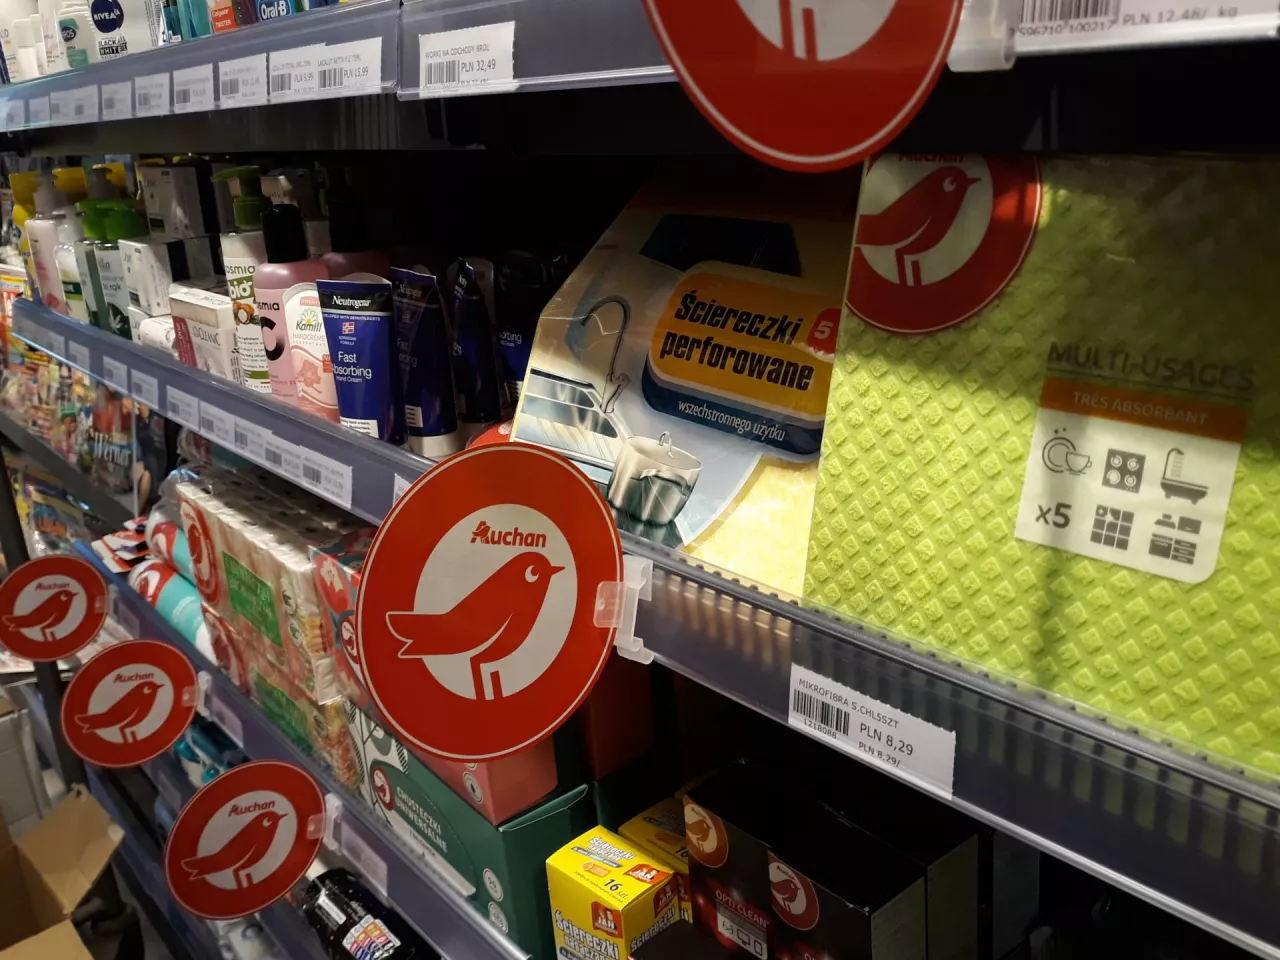 Easy Auchan, nowy format sklepu convenience na stacji paliw BP (wiadomoscihandlowe.pl)